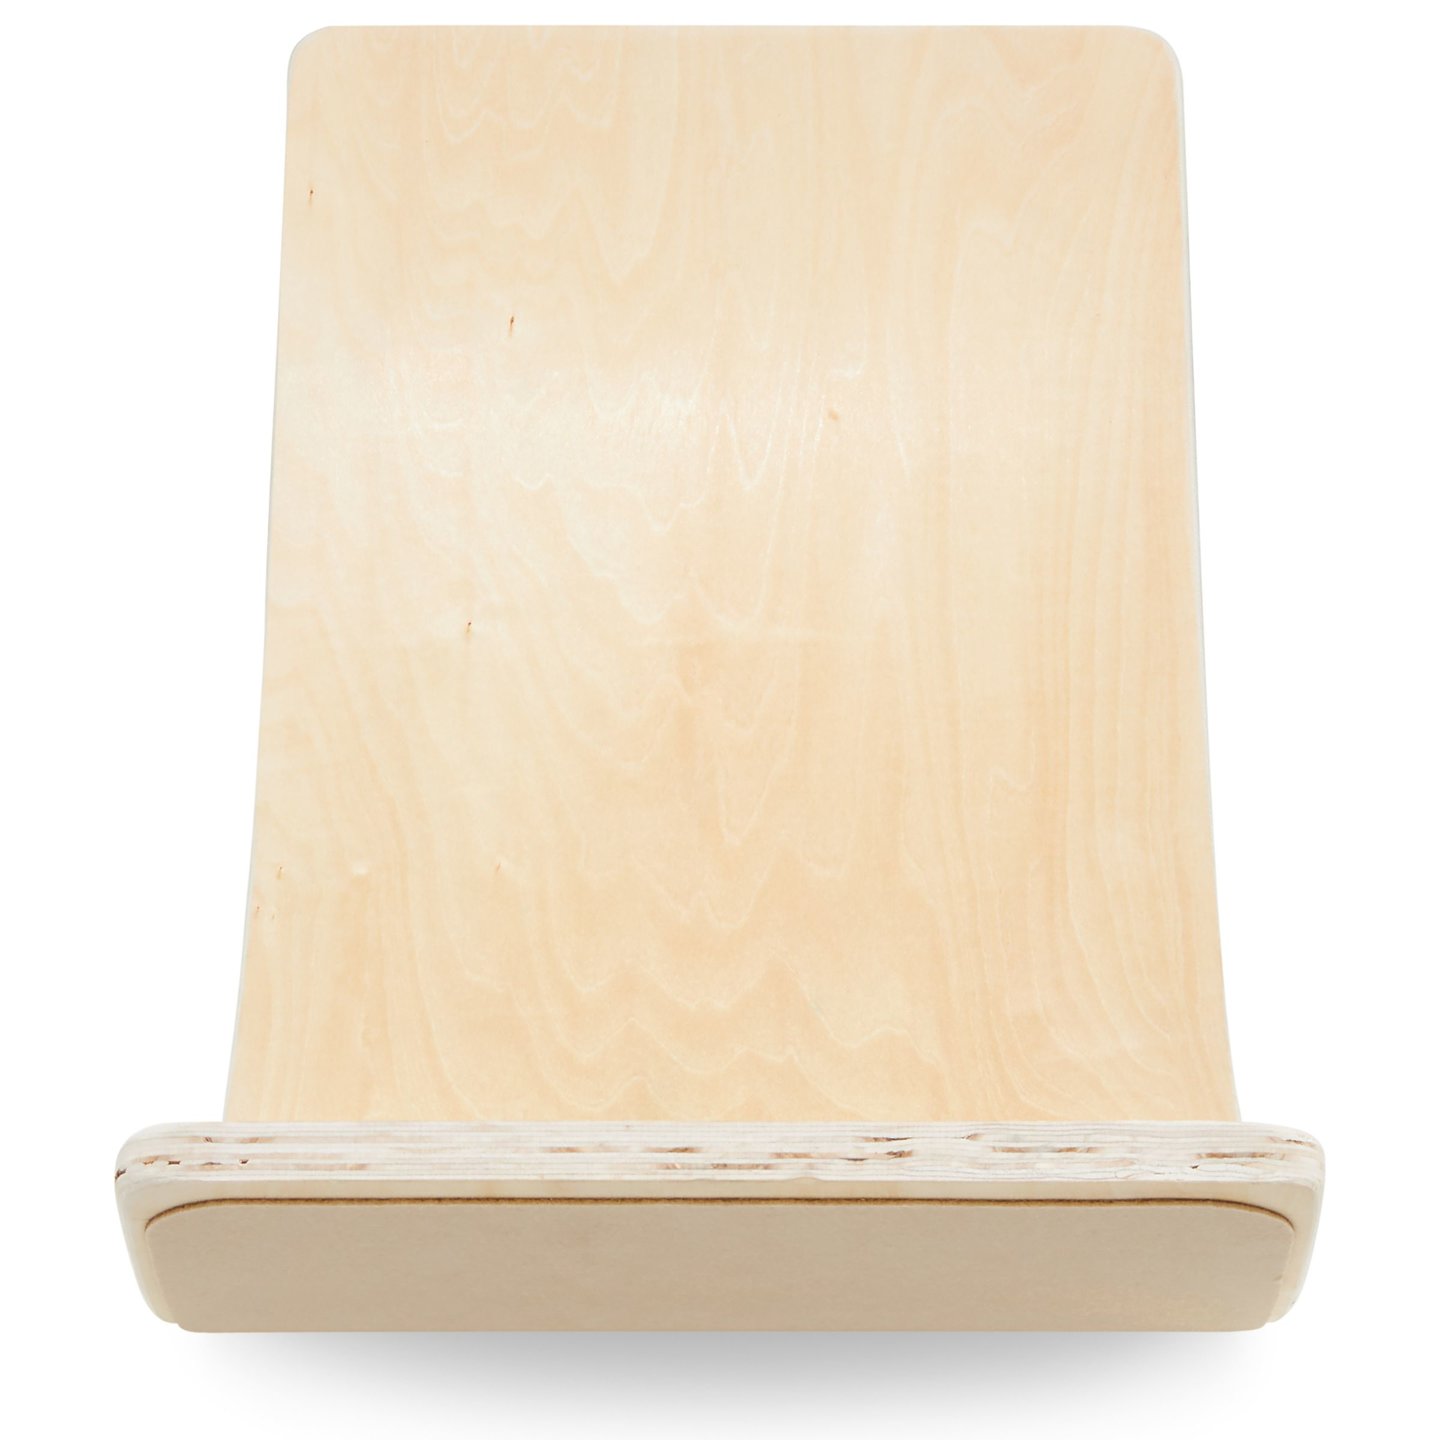 Drewniana deska do balansowania - bujak balansowy